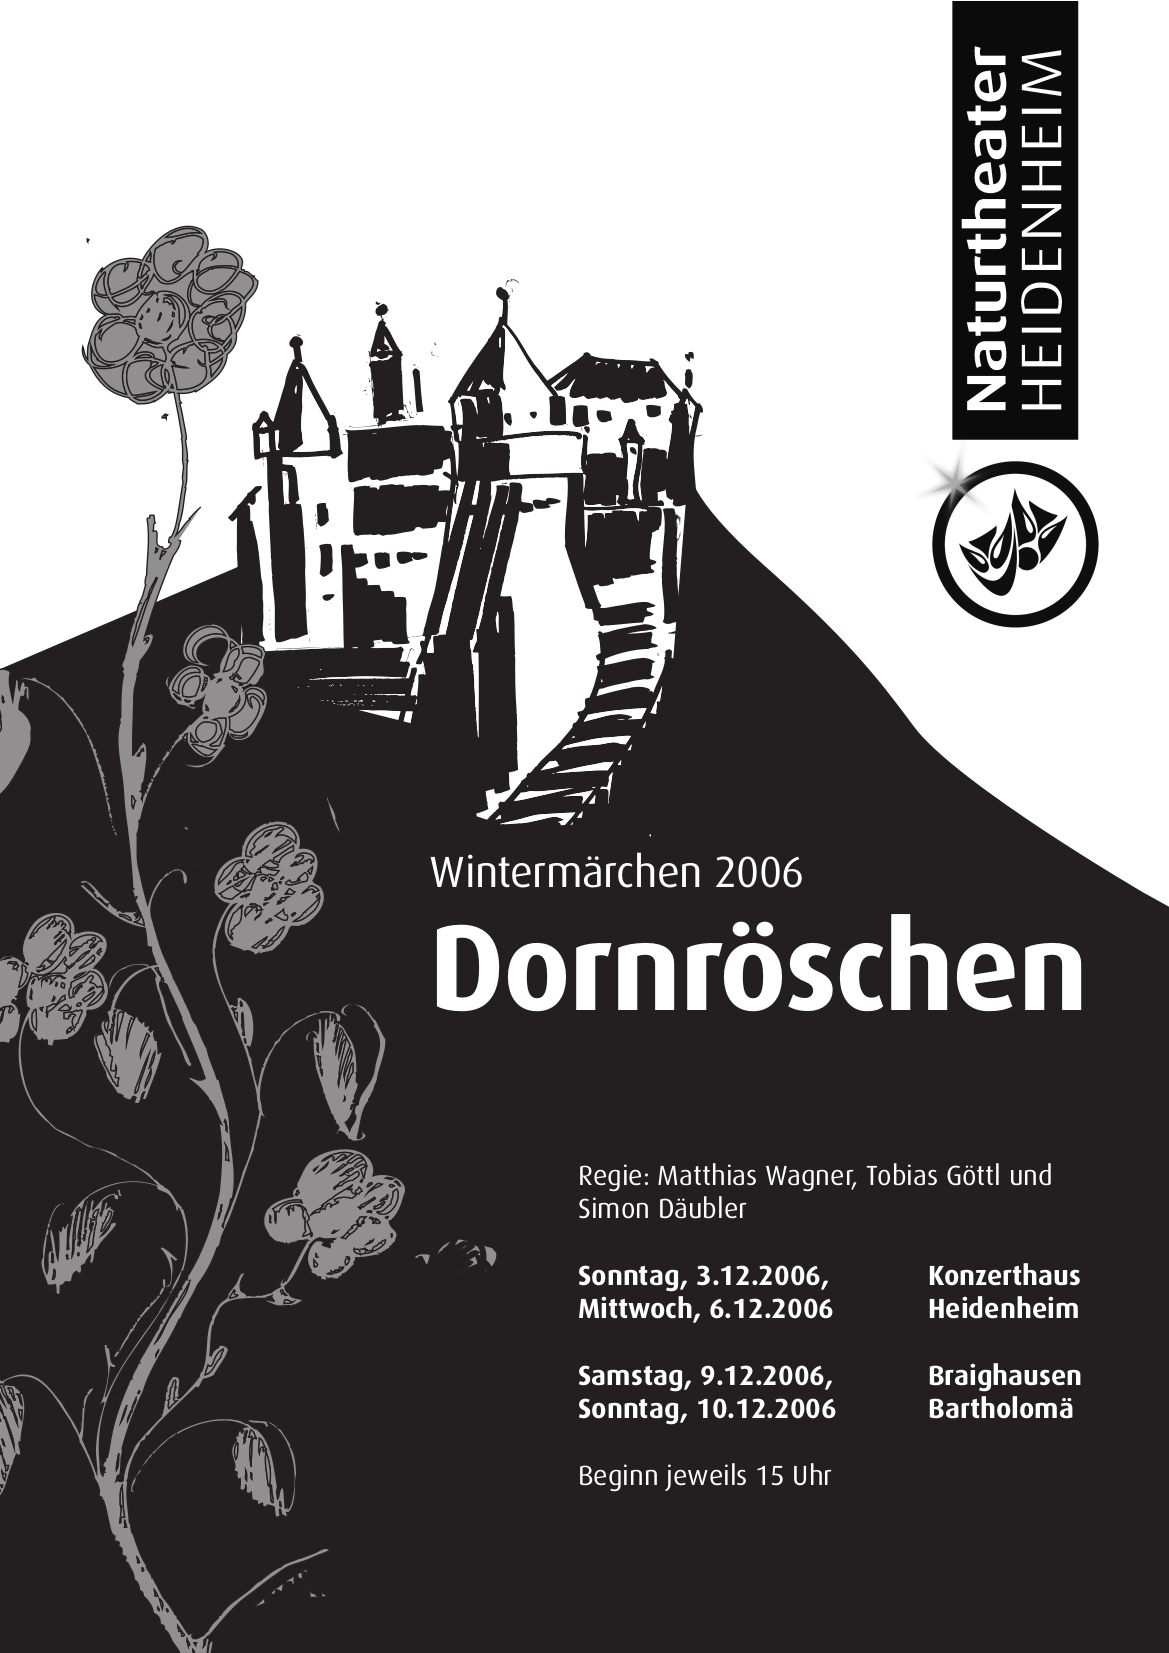 Bühne Naturtheater | » Die » Heidenheim Baden-Württemberg in Archiv zweitgrößte Dornröschen